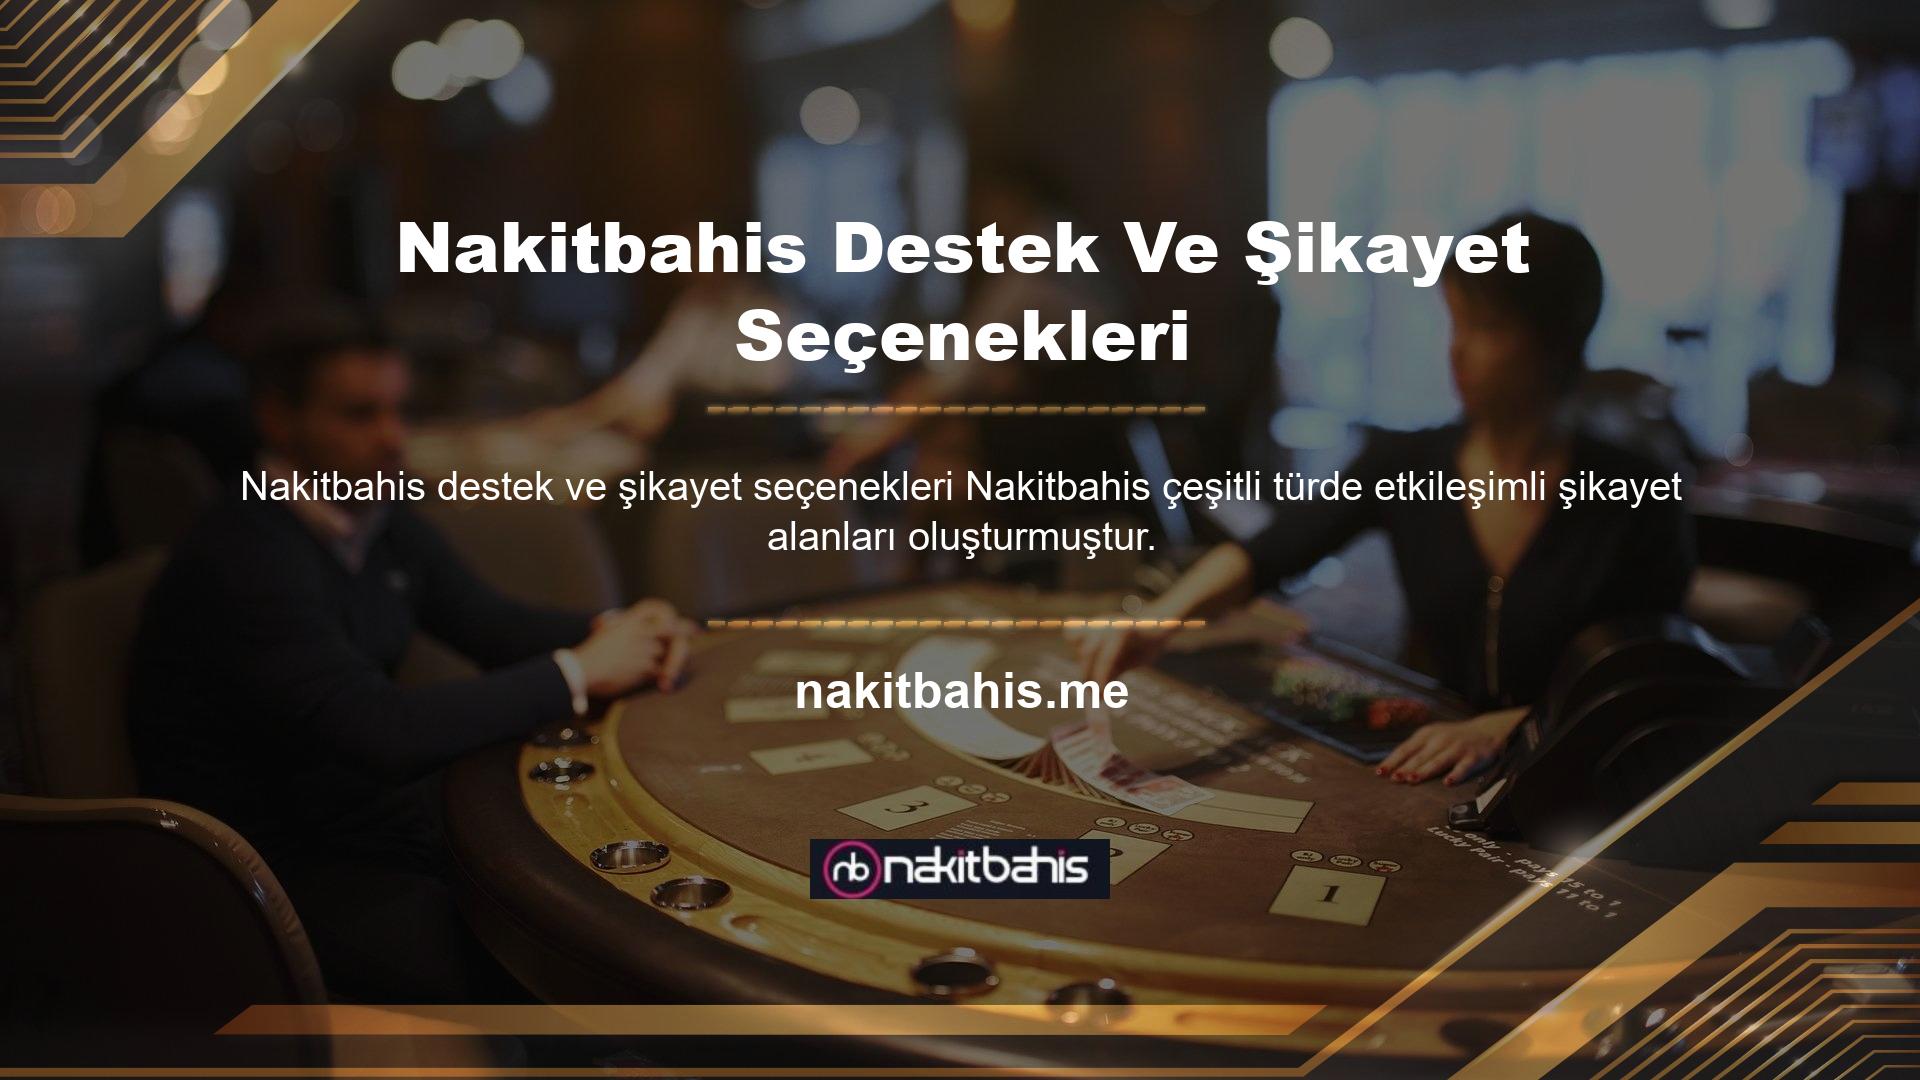 Nakitbahis Mobil'in şikayet sayfasına ulaşmak isteyen oyuncular çeşitli alanlardan talepte bulunabilmektedir